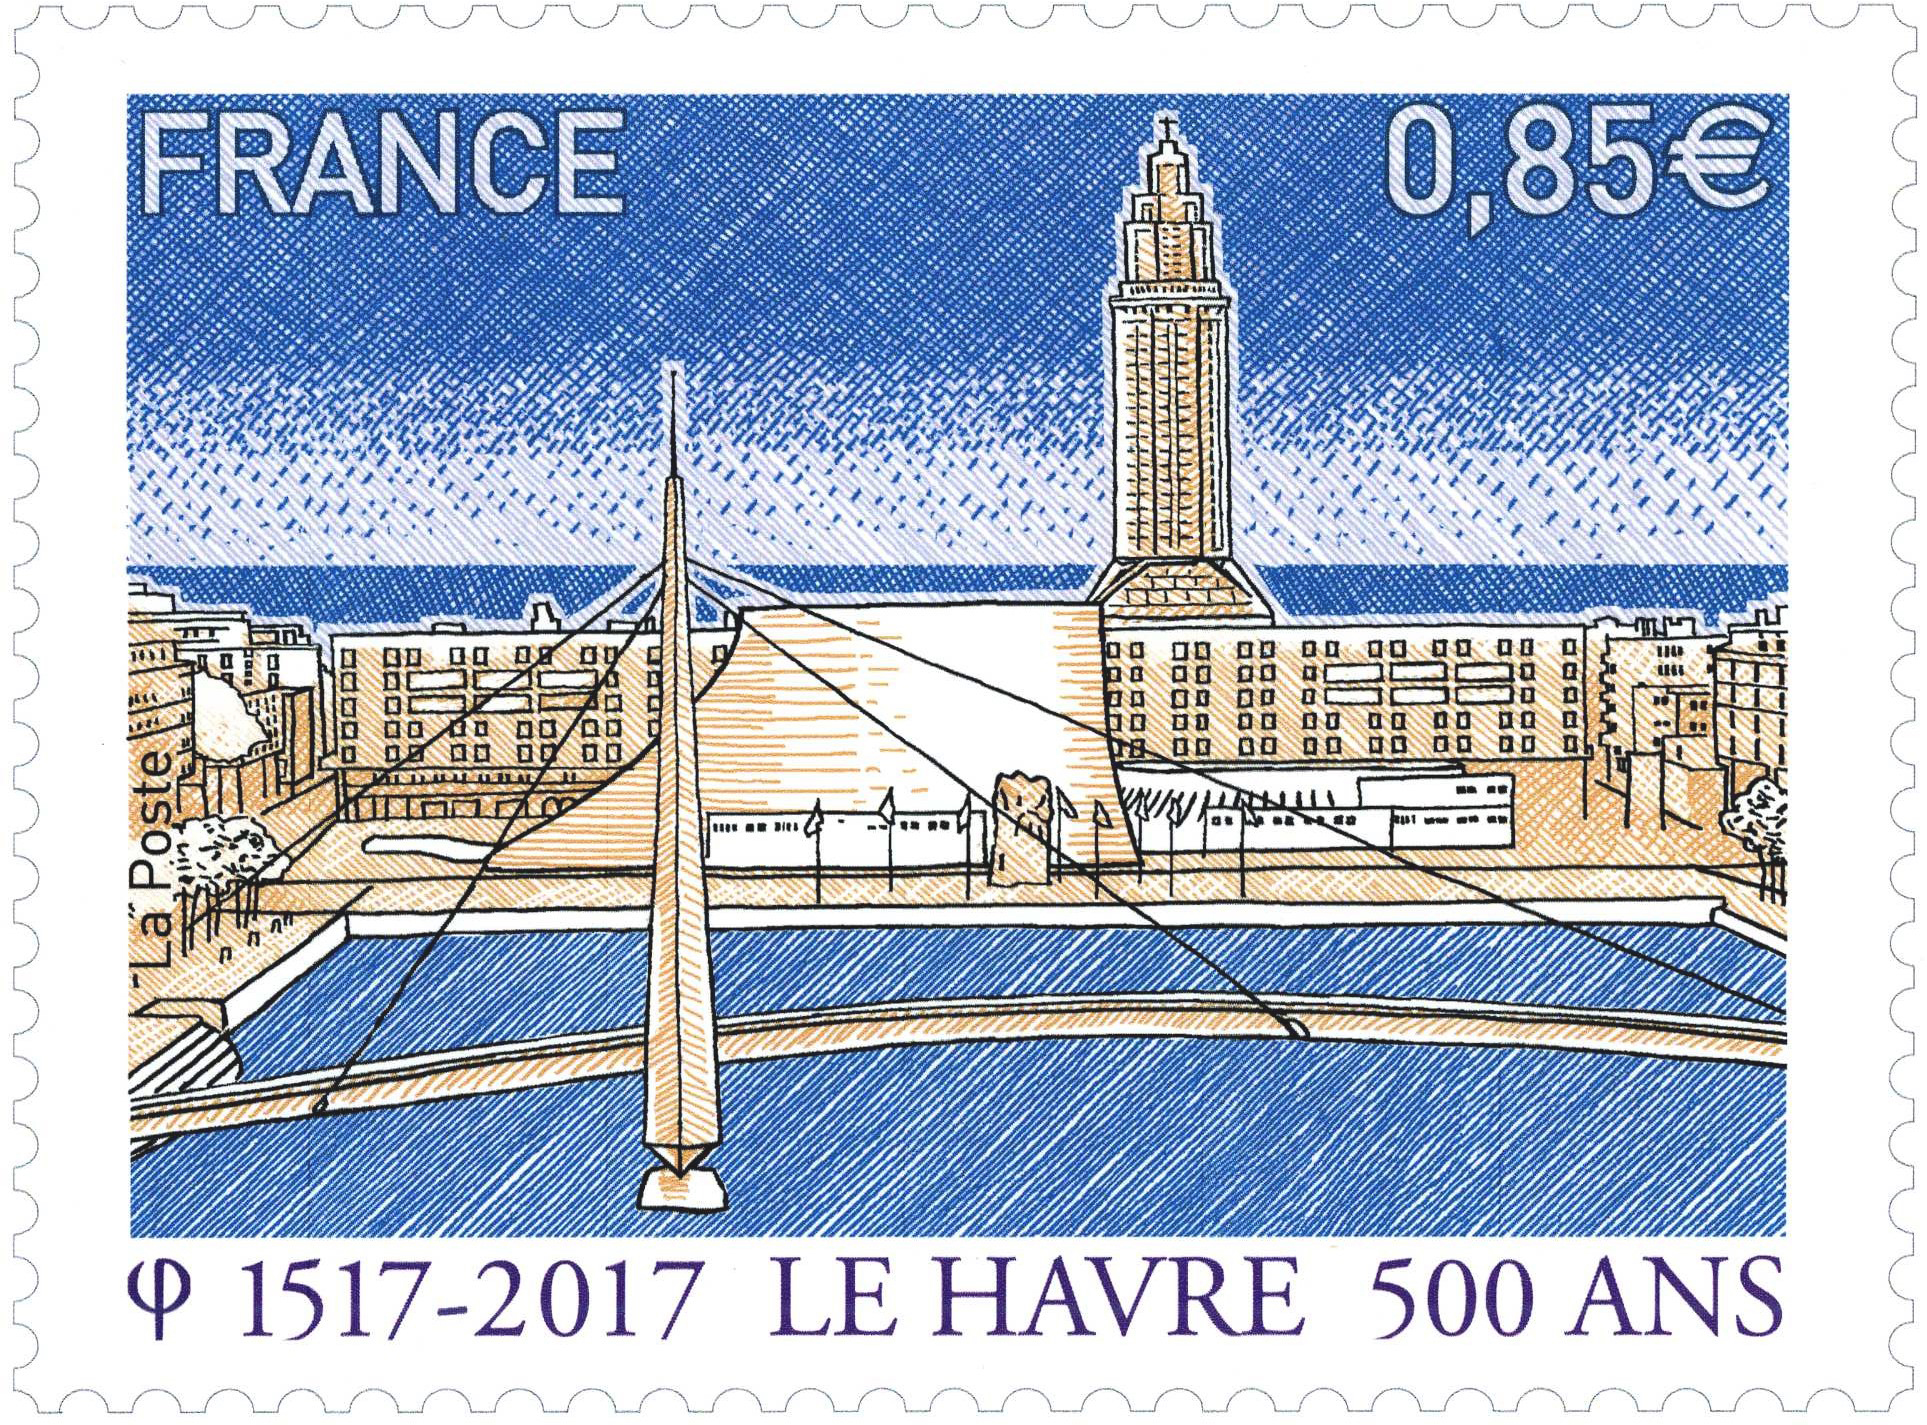 1517 - 2017 LE HAVRE 500 ANS